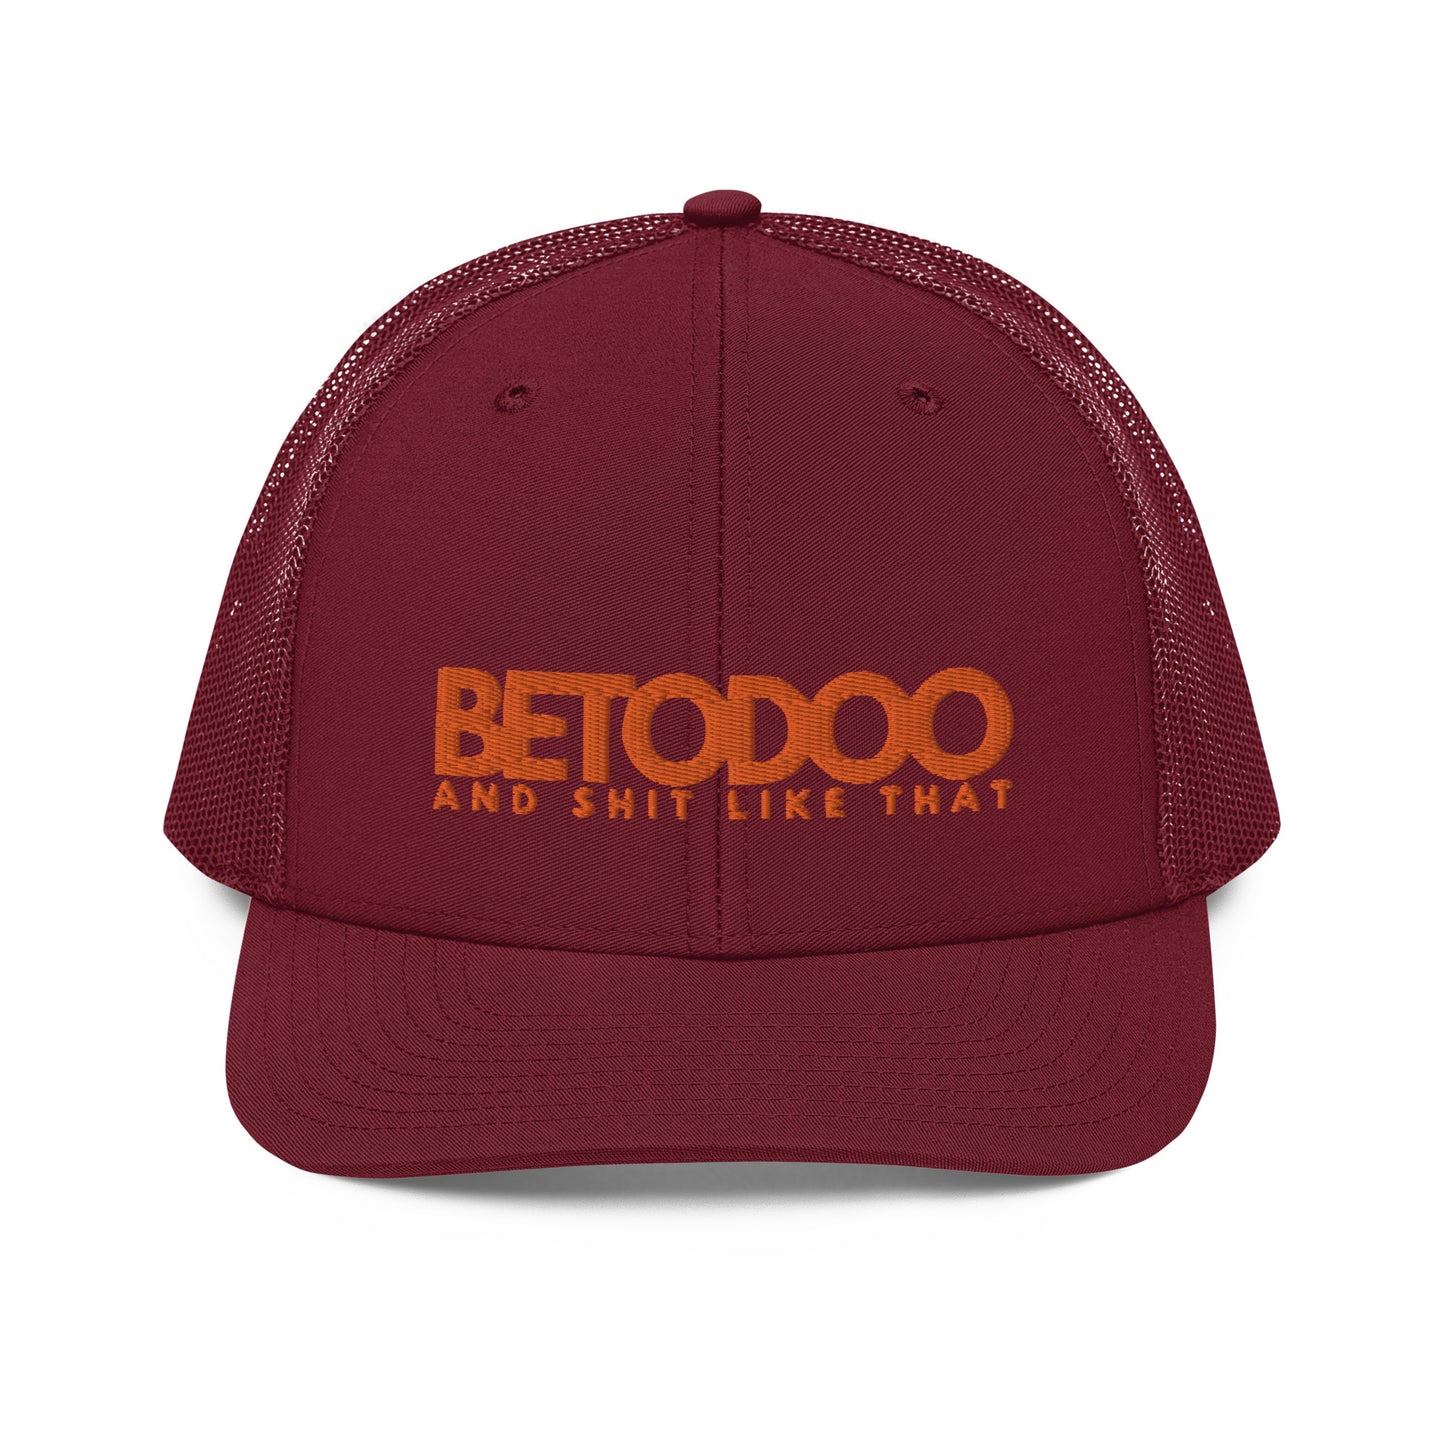 BETODOO AMY B Trucker Cap